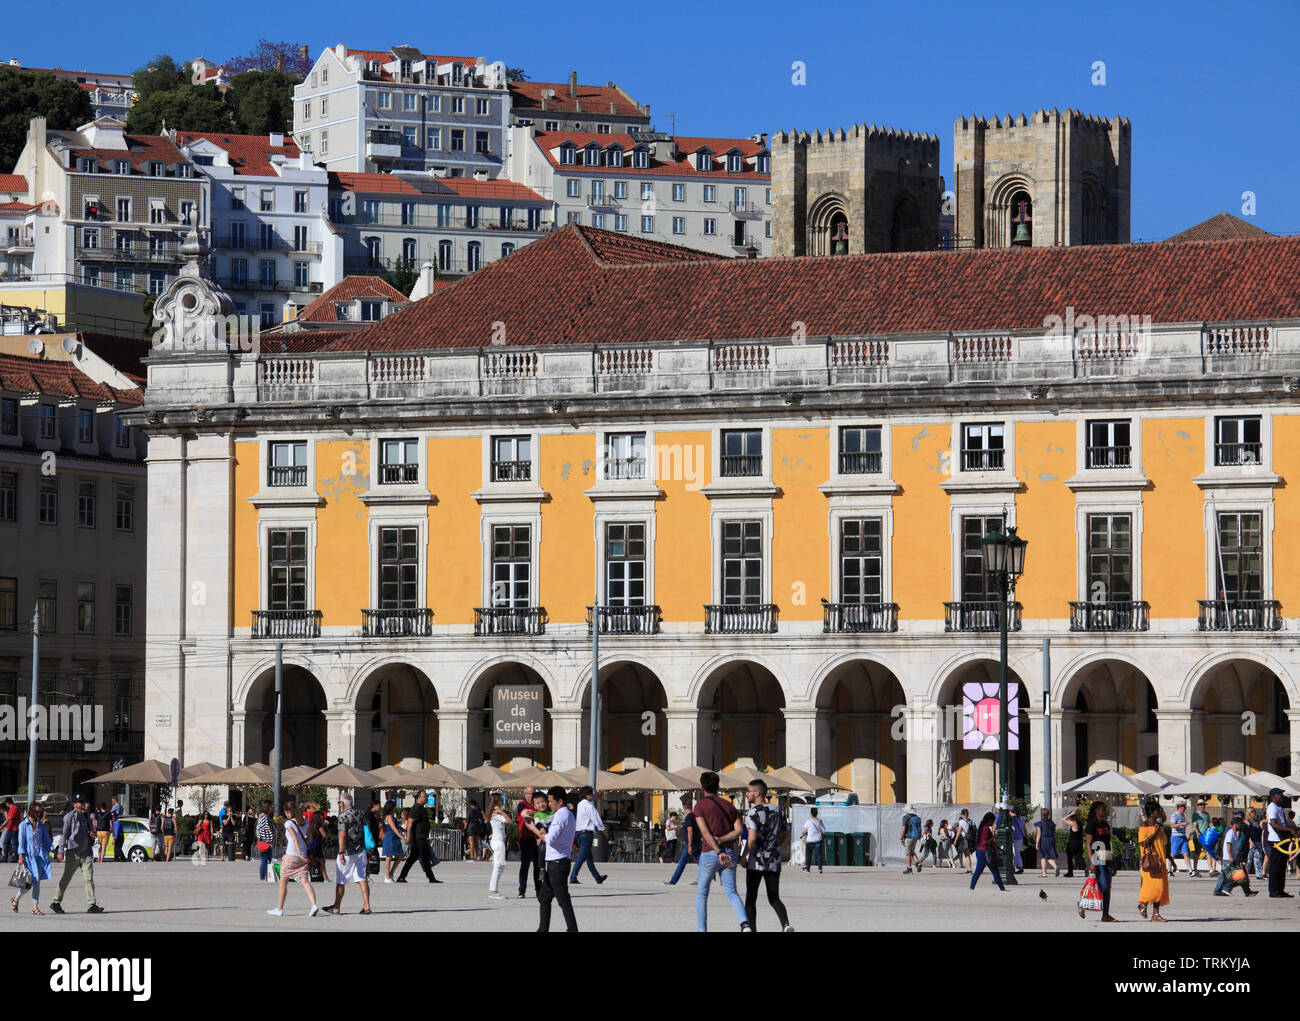 Portugal, Lisbon, Baixa, Praca do Comercio, Terreiro do Paco, Stock Photo